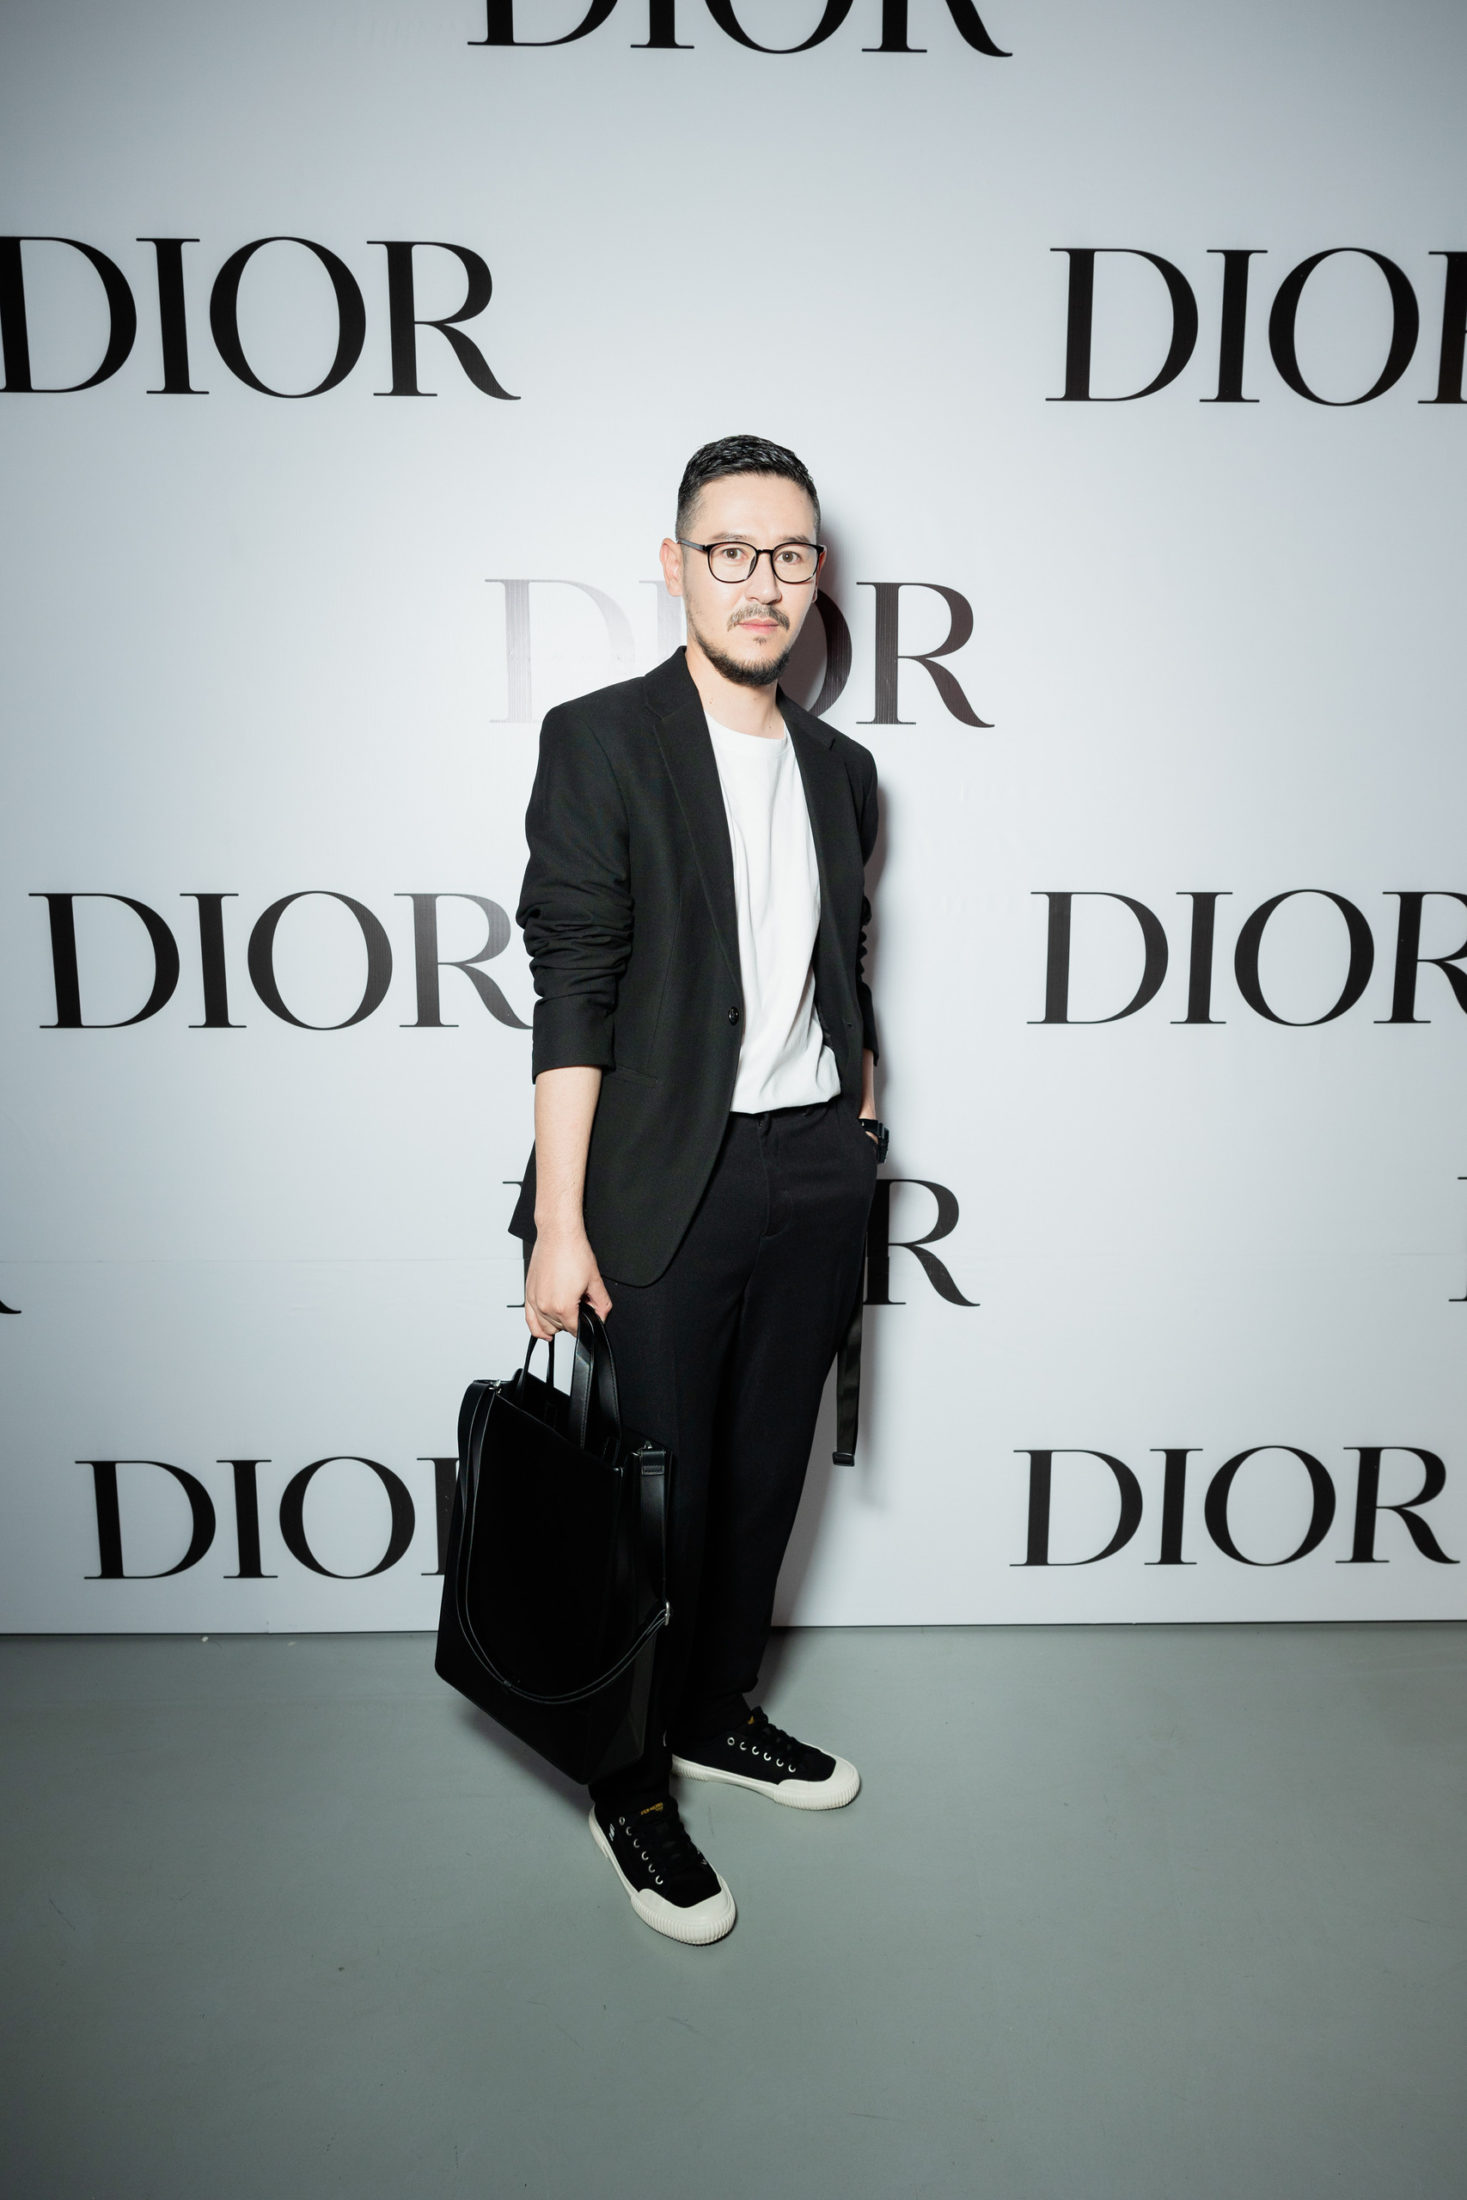 Волшебные преображения с Dior Pro Team в Алматы